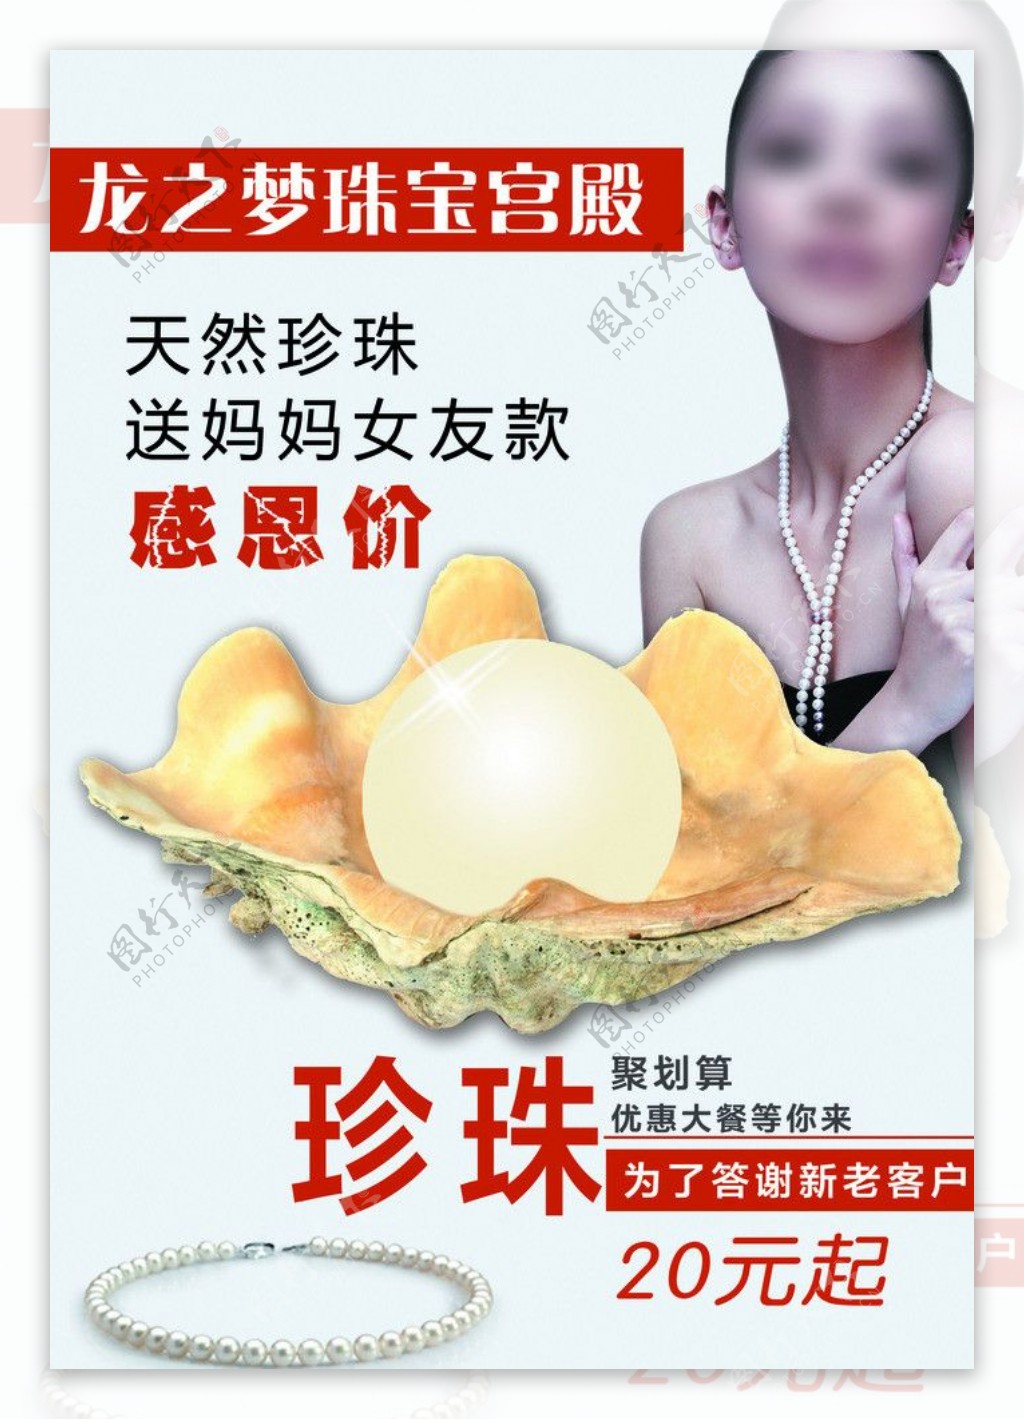 珍珠宣传海报图片